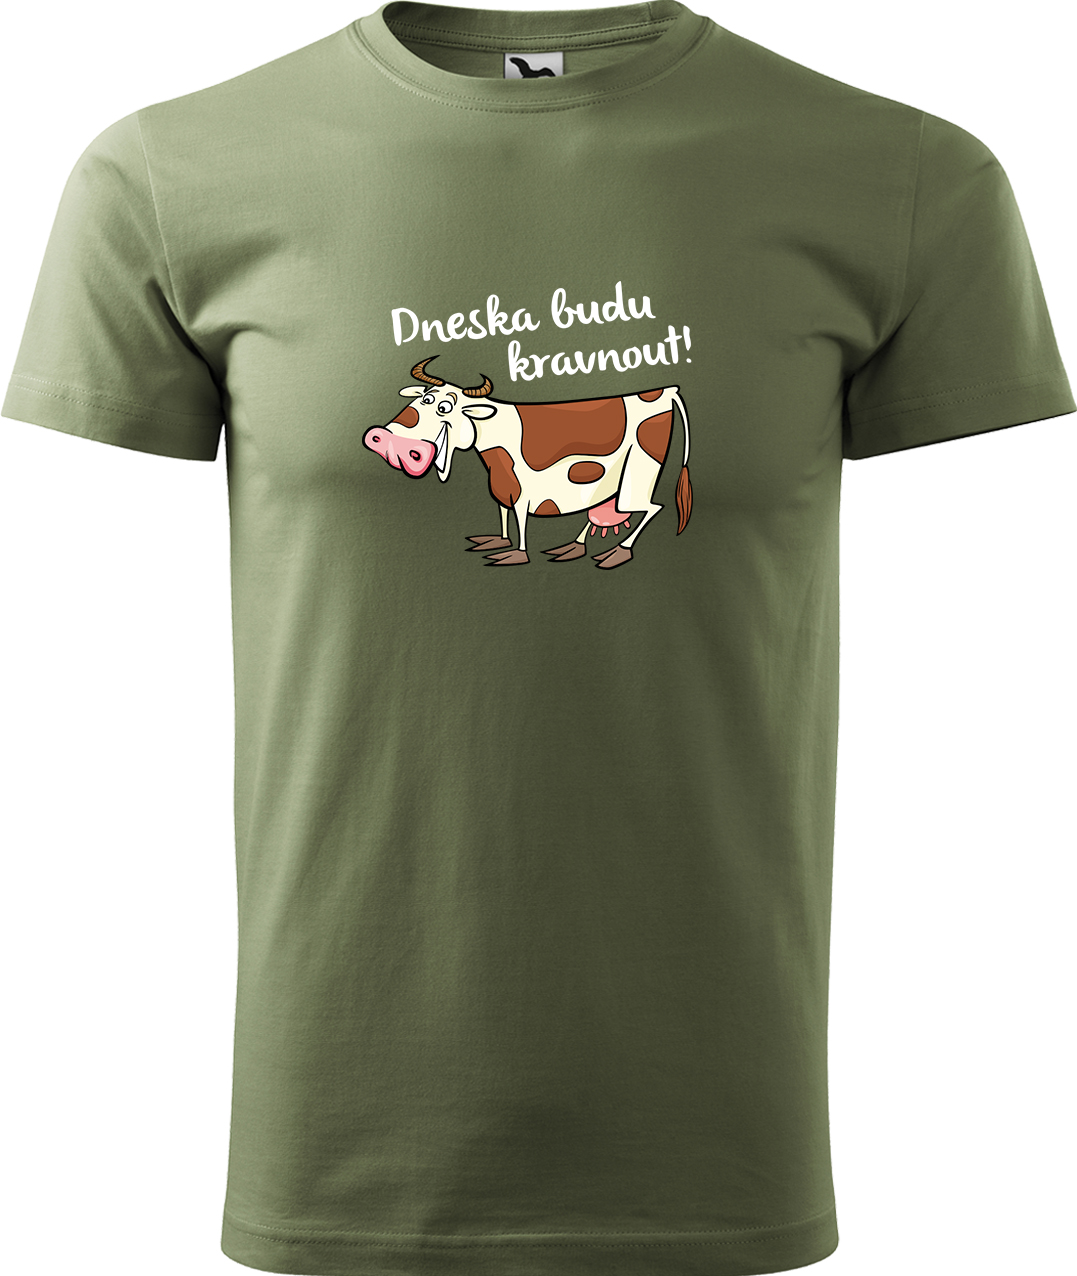 Pánské tričko s krávou - Dneska budu kravnout! Velikost: XL, Barva: Světlá khaki (28), Střih: pánský